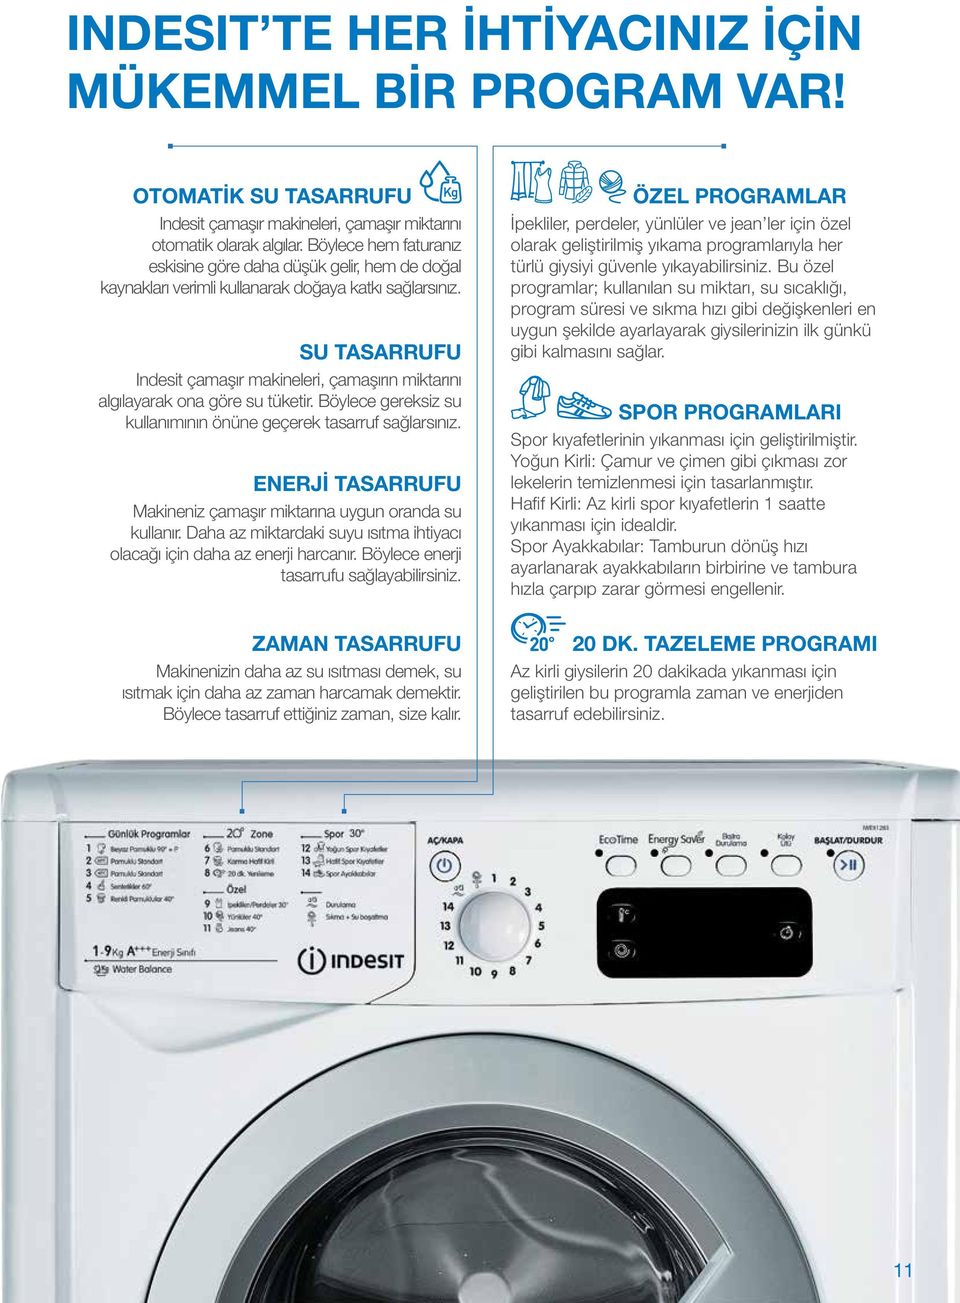 SU TASARRUFU Indesit çamaşır makineleri, çamaşırın miktarını algılayarak ona göre su tüketir. Böylece gereksiz su kullanımının önüne geçerek tasarruf sağlarsınız.